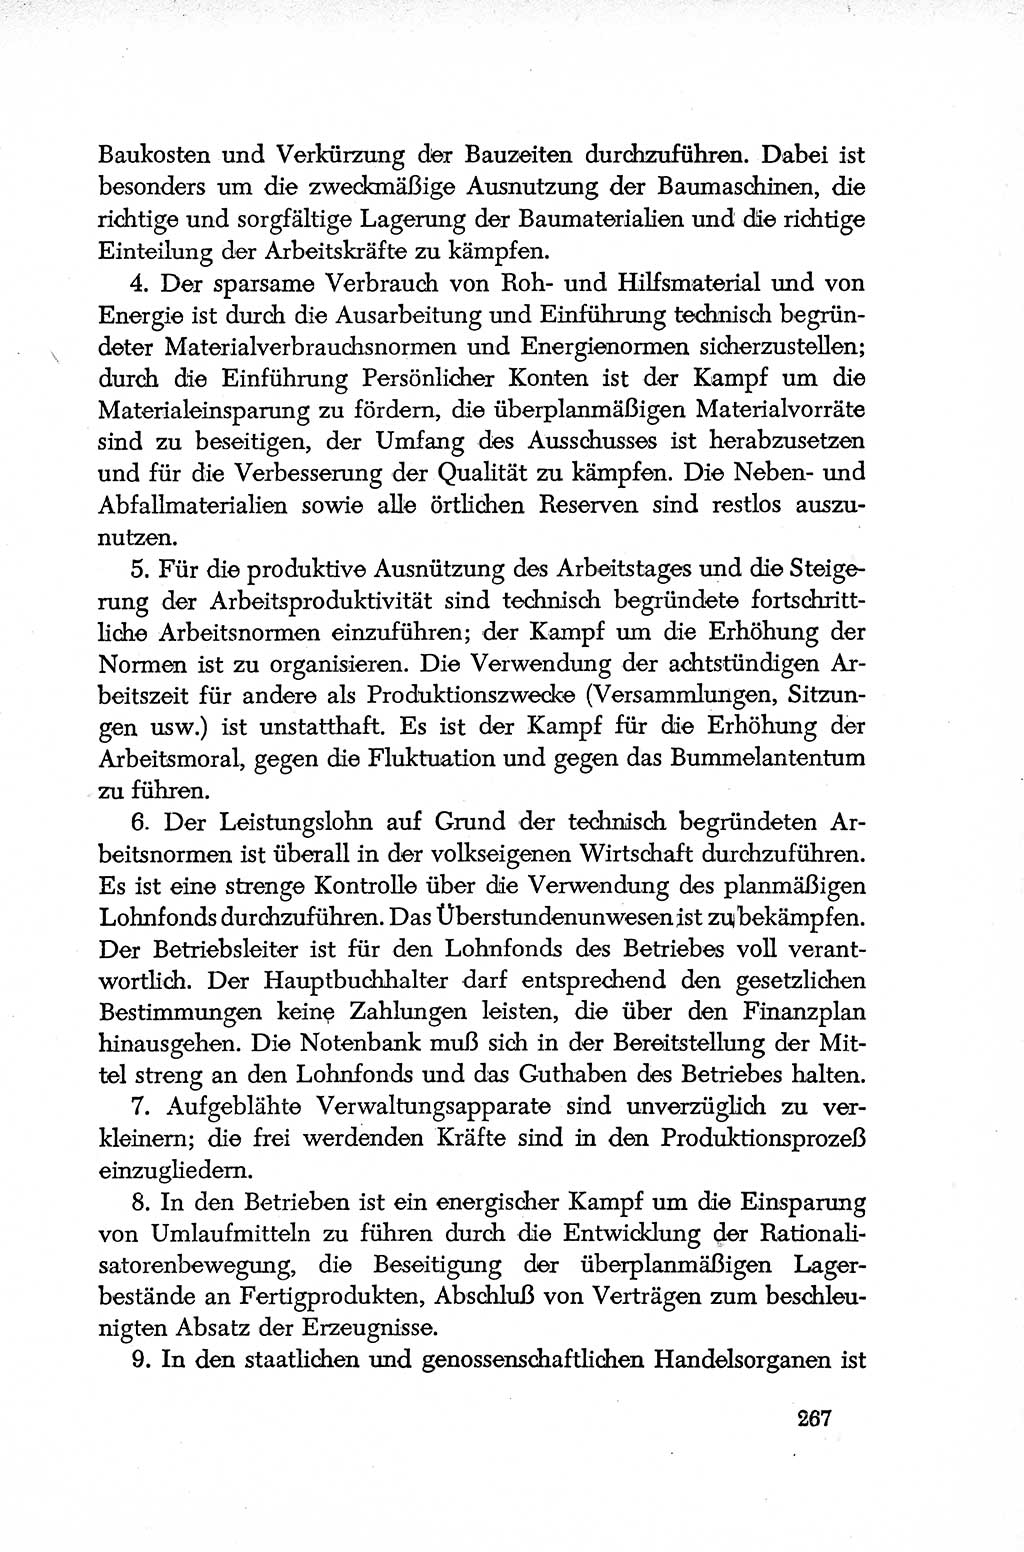 Dokumente der Sozialistischen Einheitspartei Deutschlands (SED) [Deutsche Demokratische Republik (DDR)] 1952-1953, Seite 267 (Dok. SED DDR 1952-1953, S. 267)